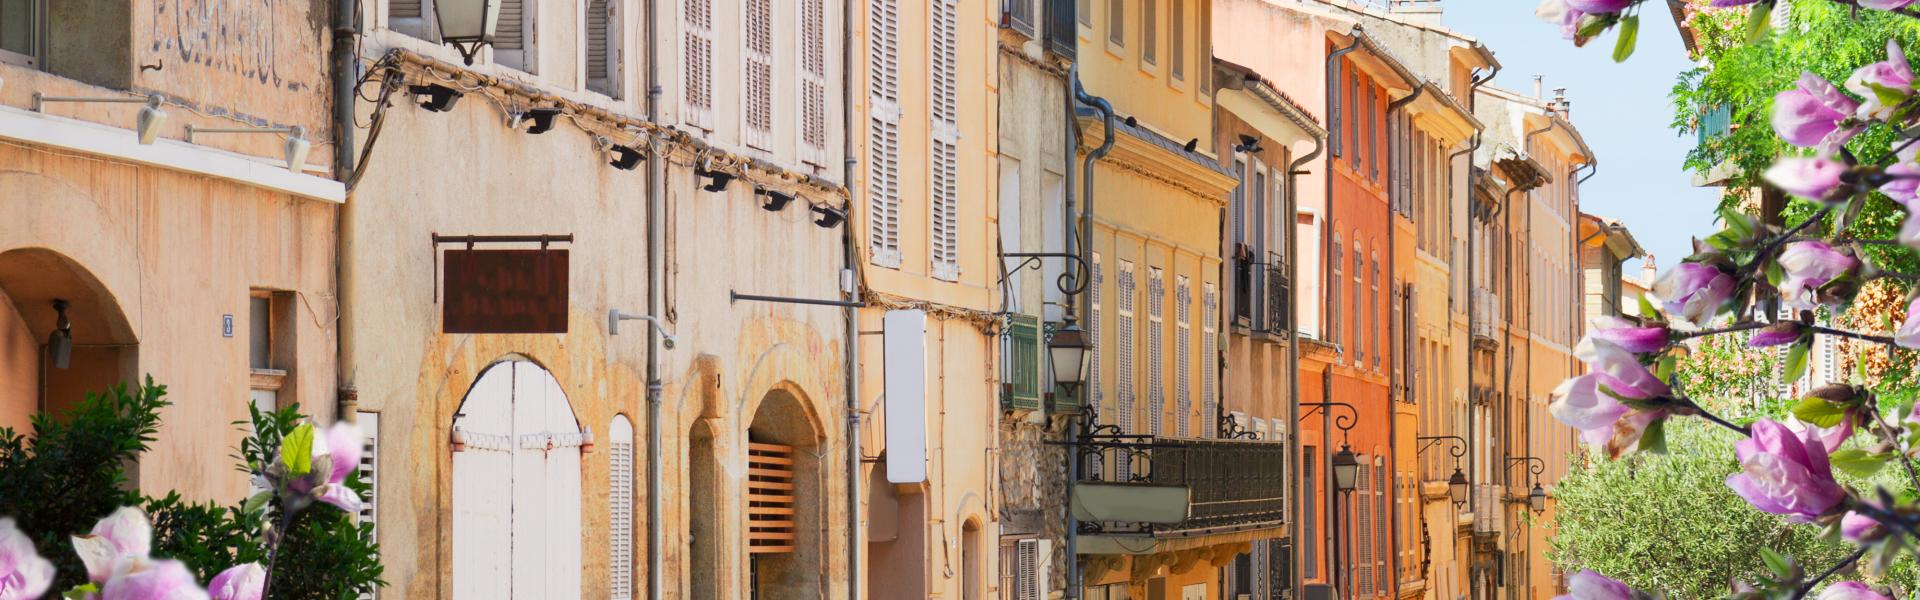 Ferienwohnungen & Ferienhäuser für Urlaub in Aix-en-Provence - Casamundo